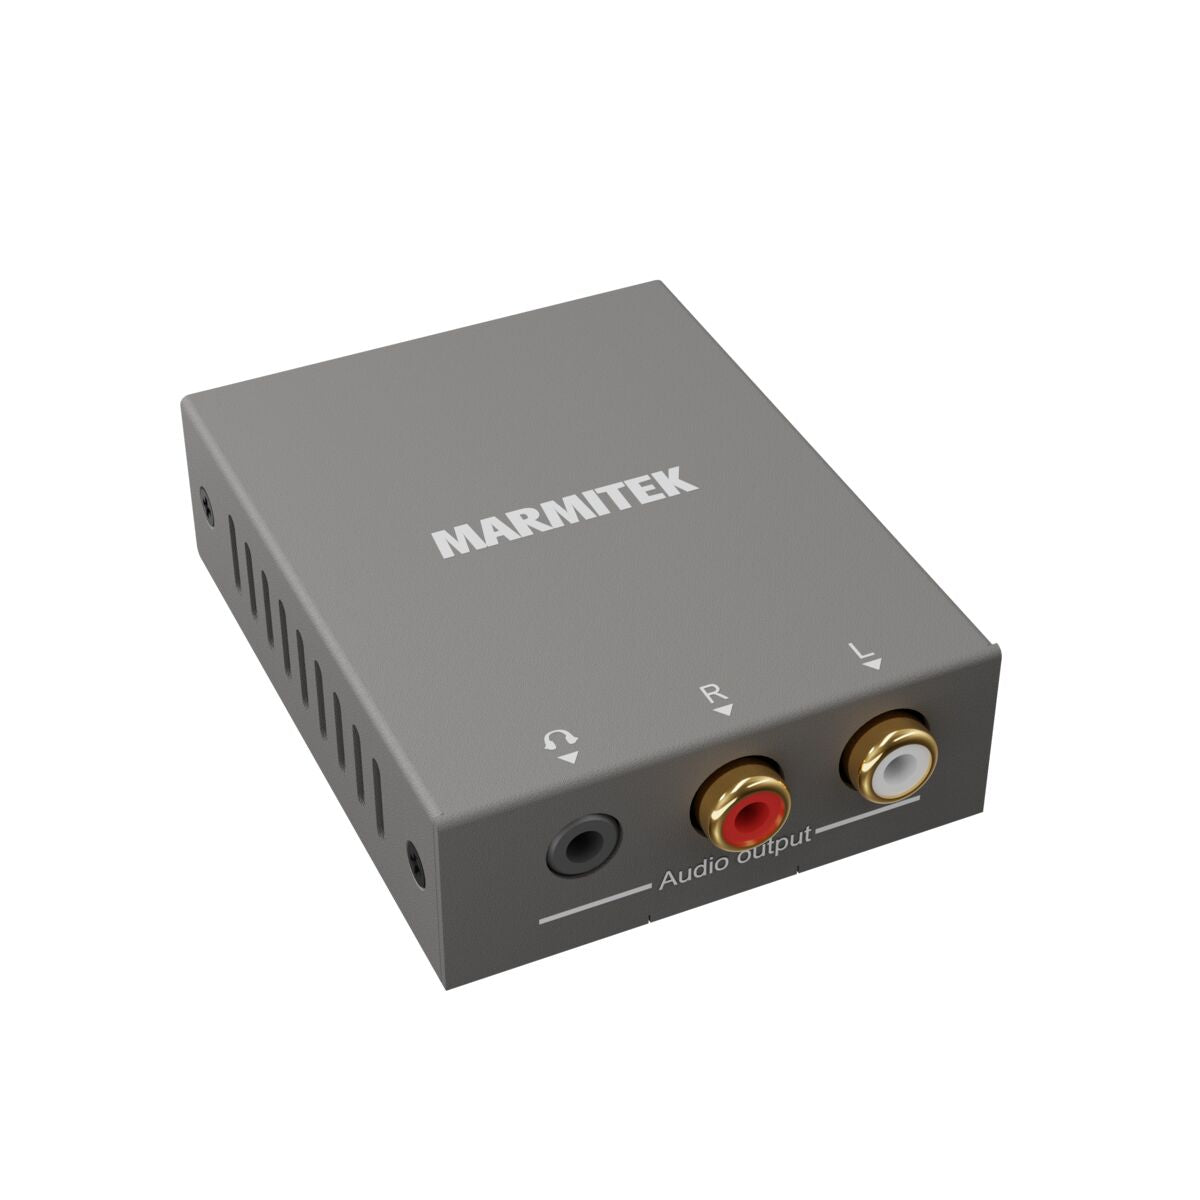 Connect ARC13 - Extracteur audio HDMI - ARC - CEC